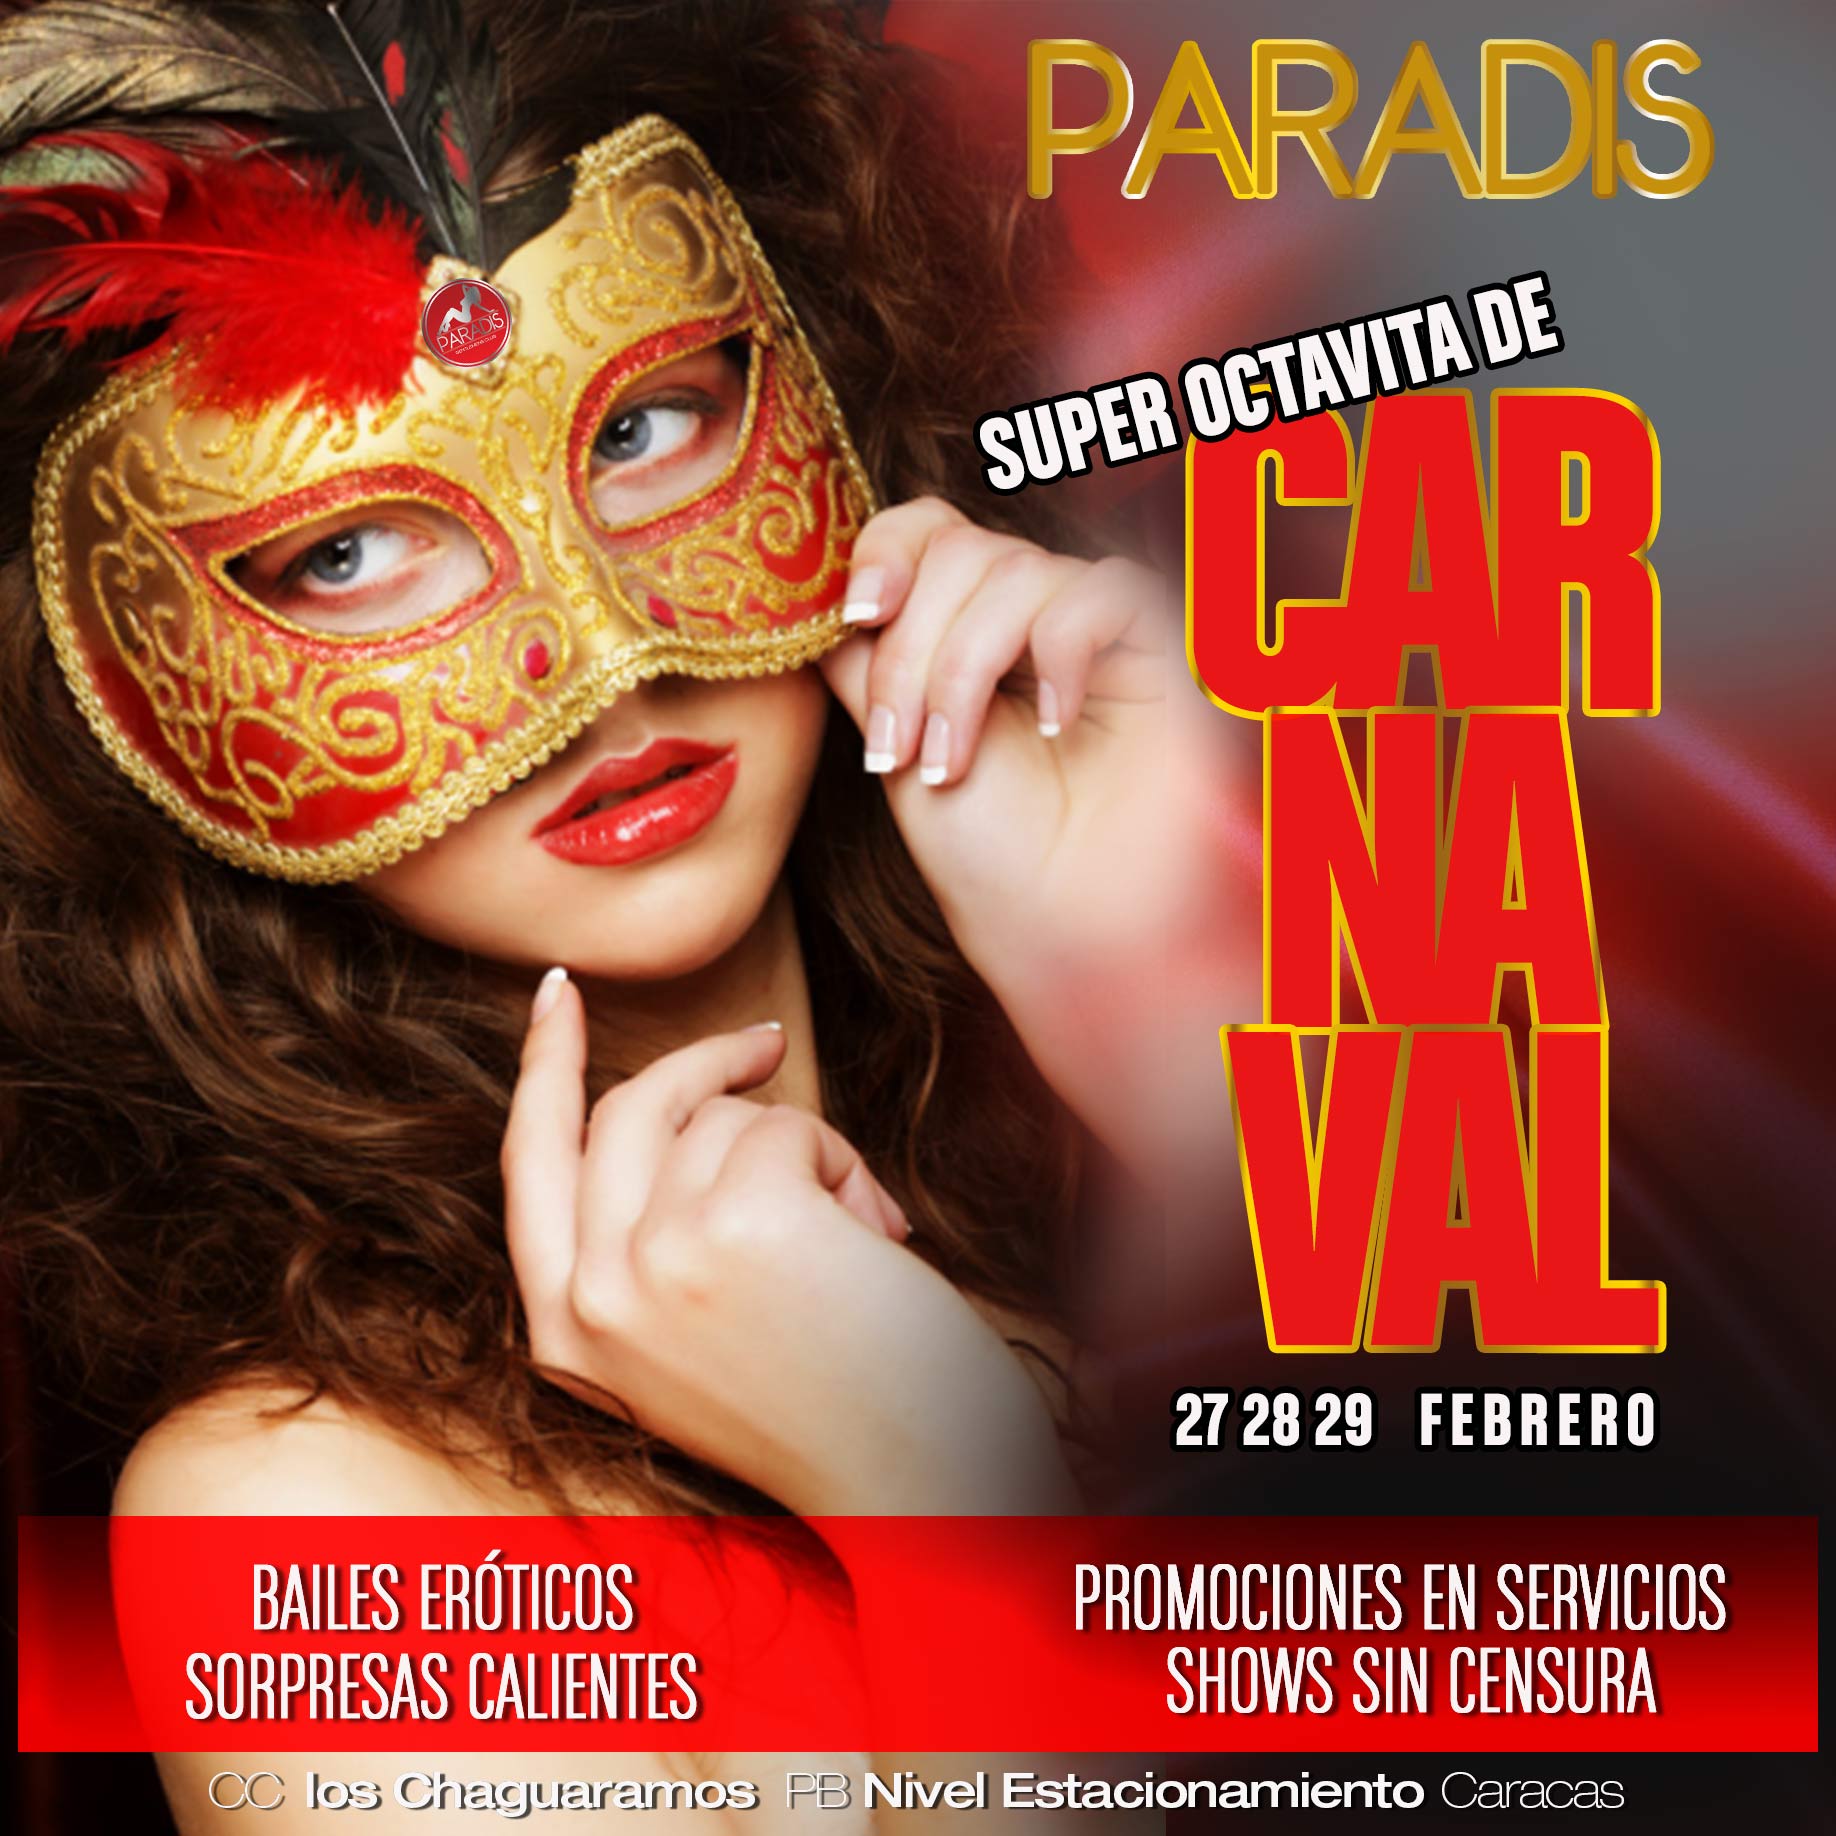 Paradis Gentlemen's on X: En PARADIS la la octavita de Carnaval 2020 será  de locura! Bailes eróticos, promociones en servicios, sorpresas calientes y  shows sin censura! El 27,28,y 29 de febrero la